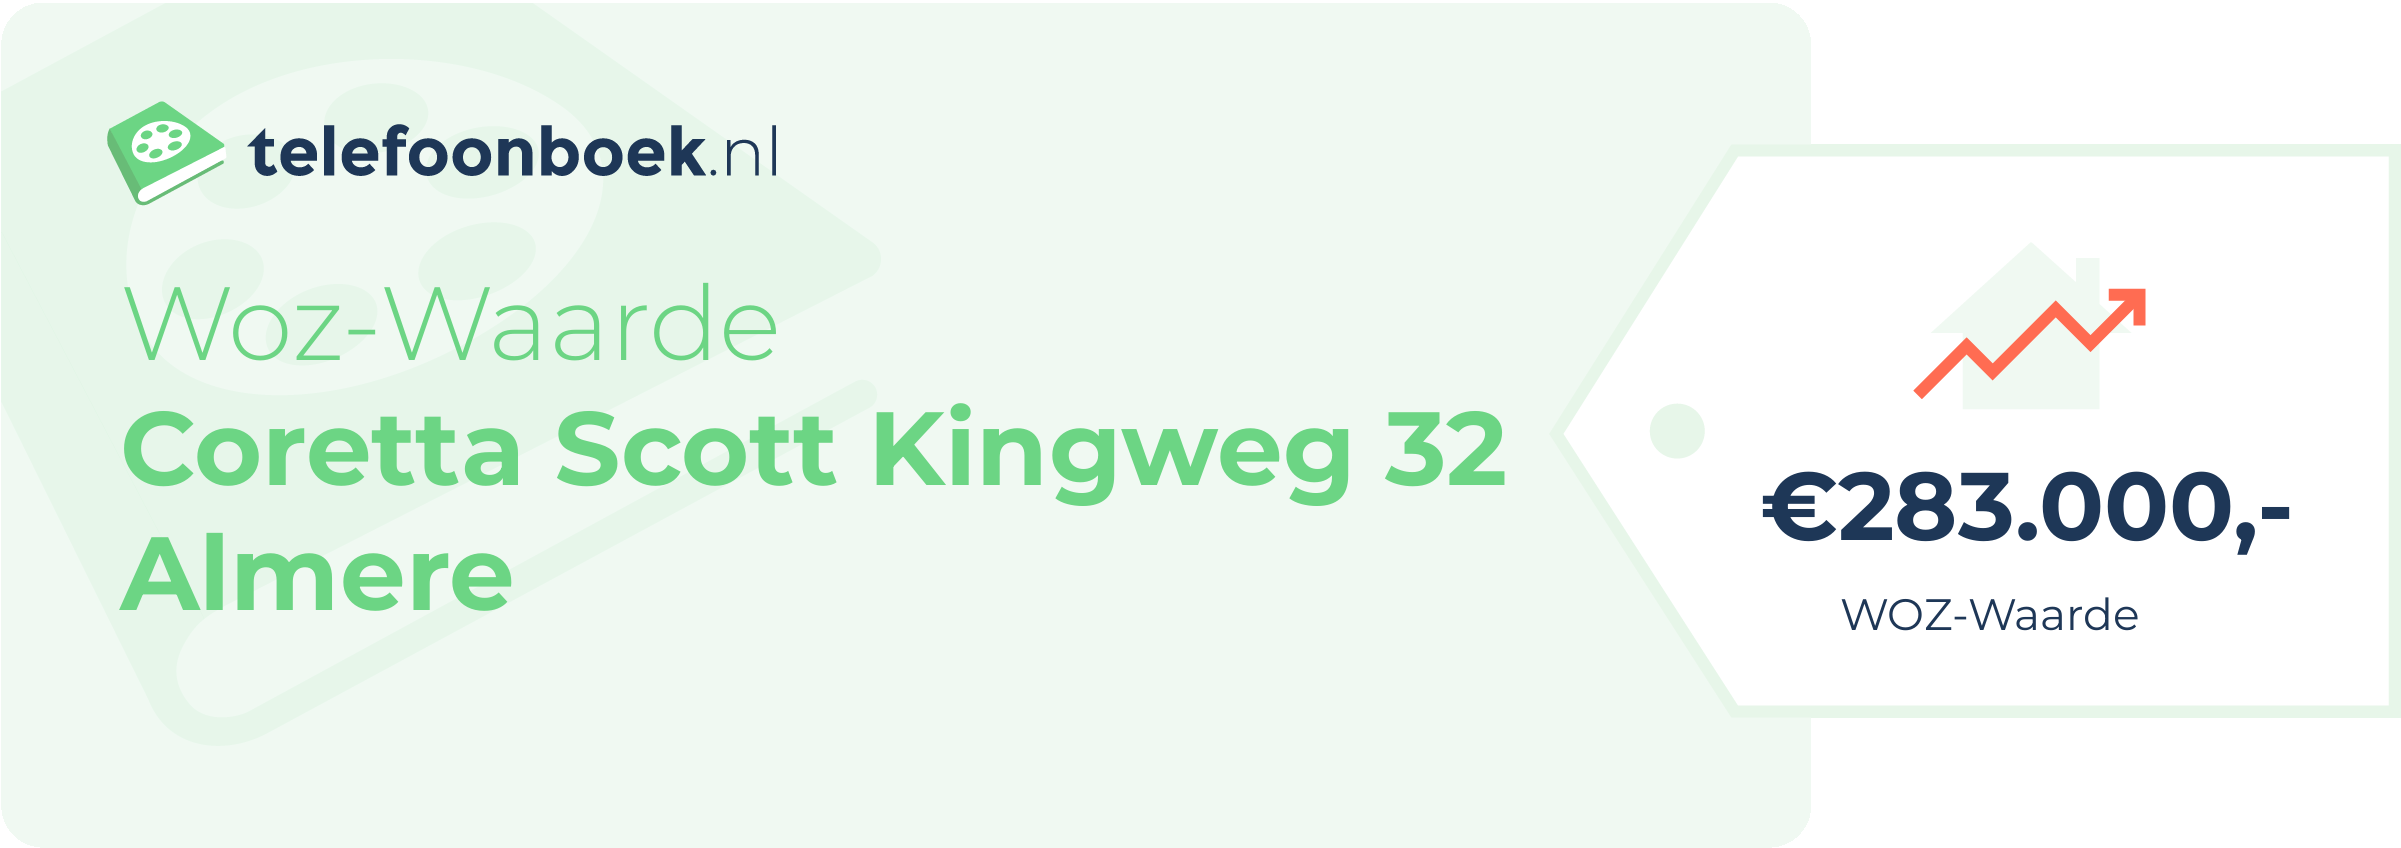 WOZ-waarde Coretta Scott Kingweg 32 Almere